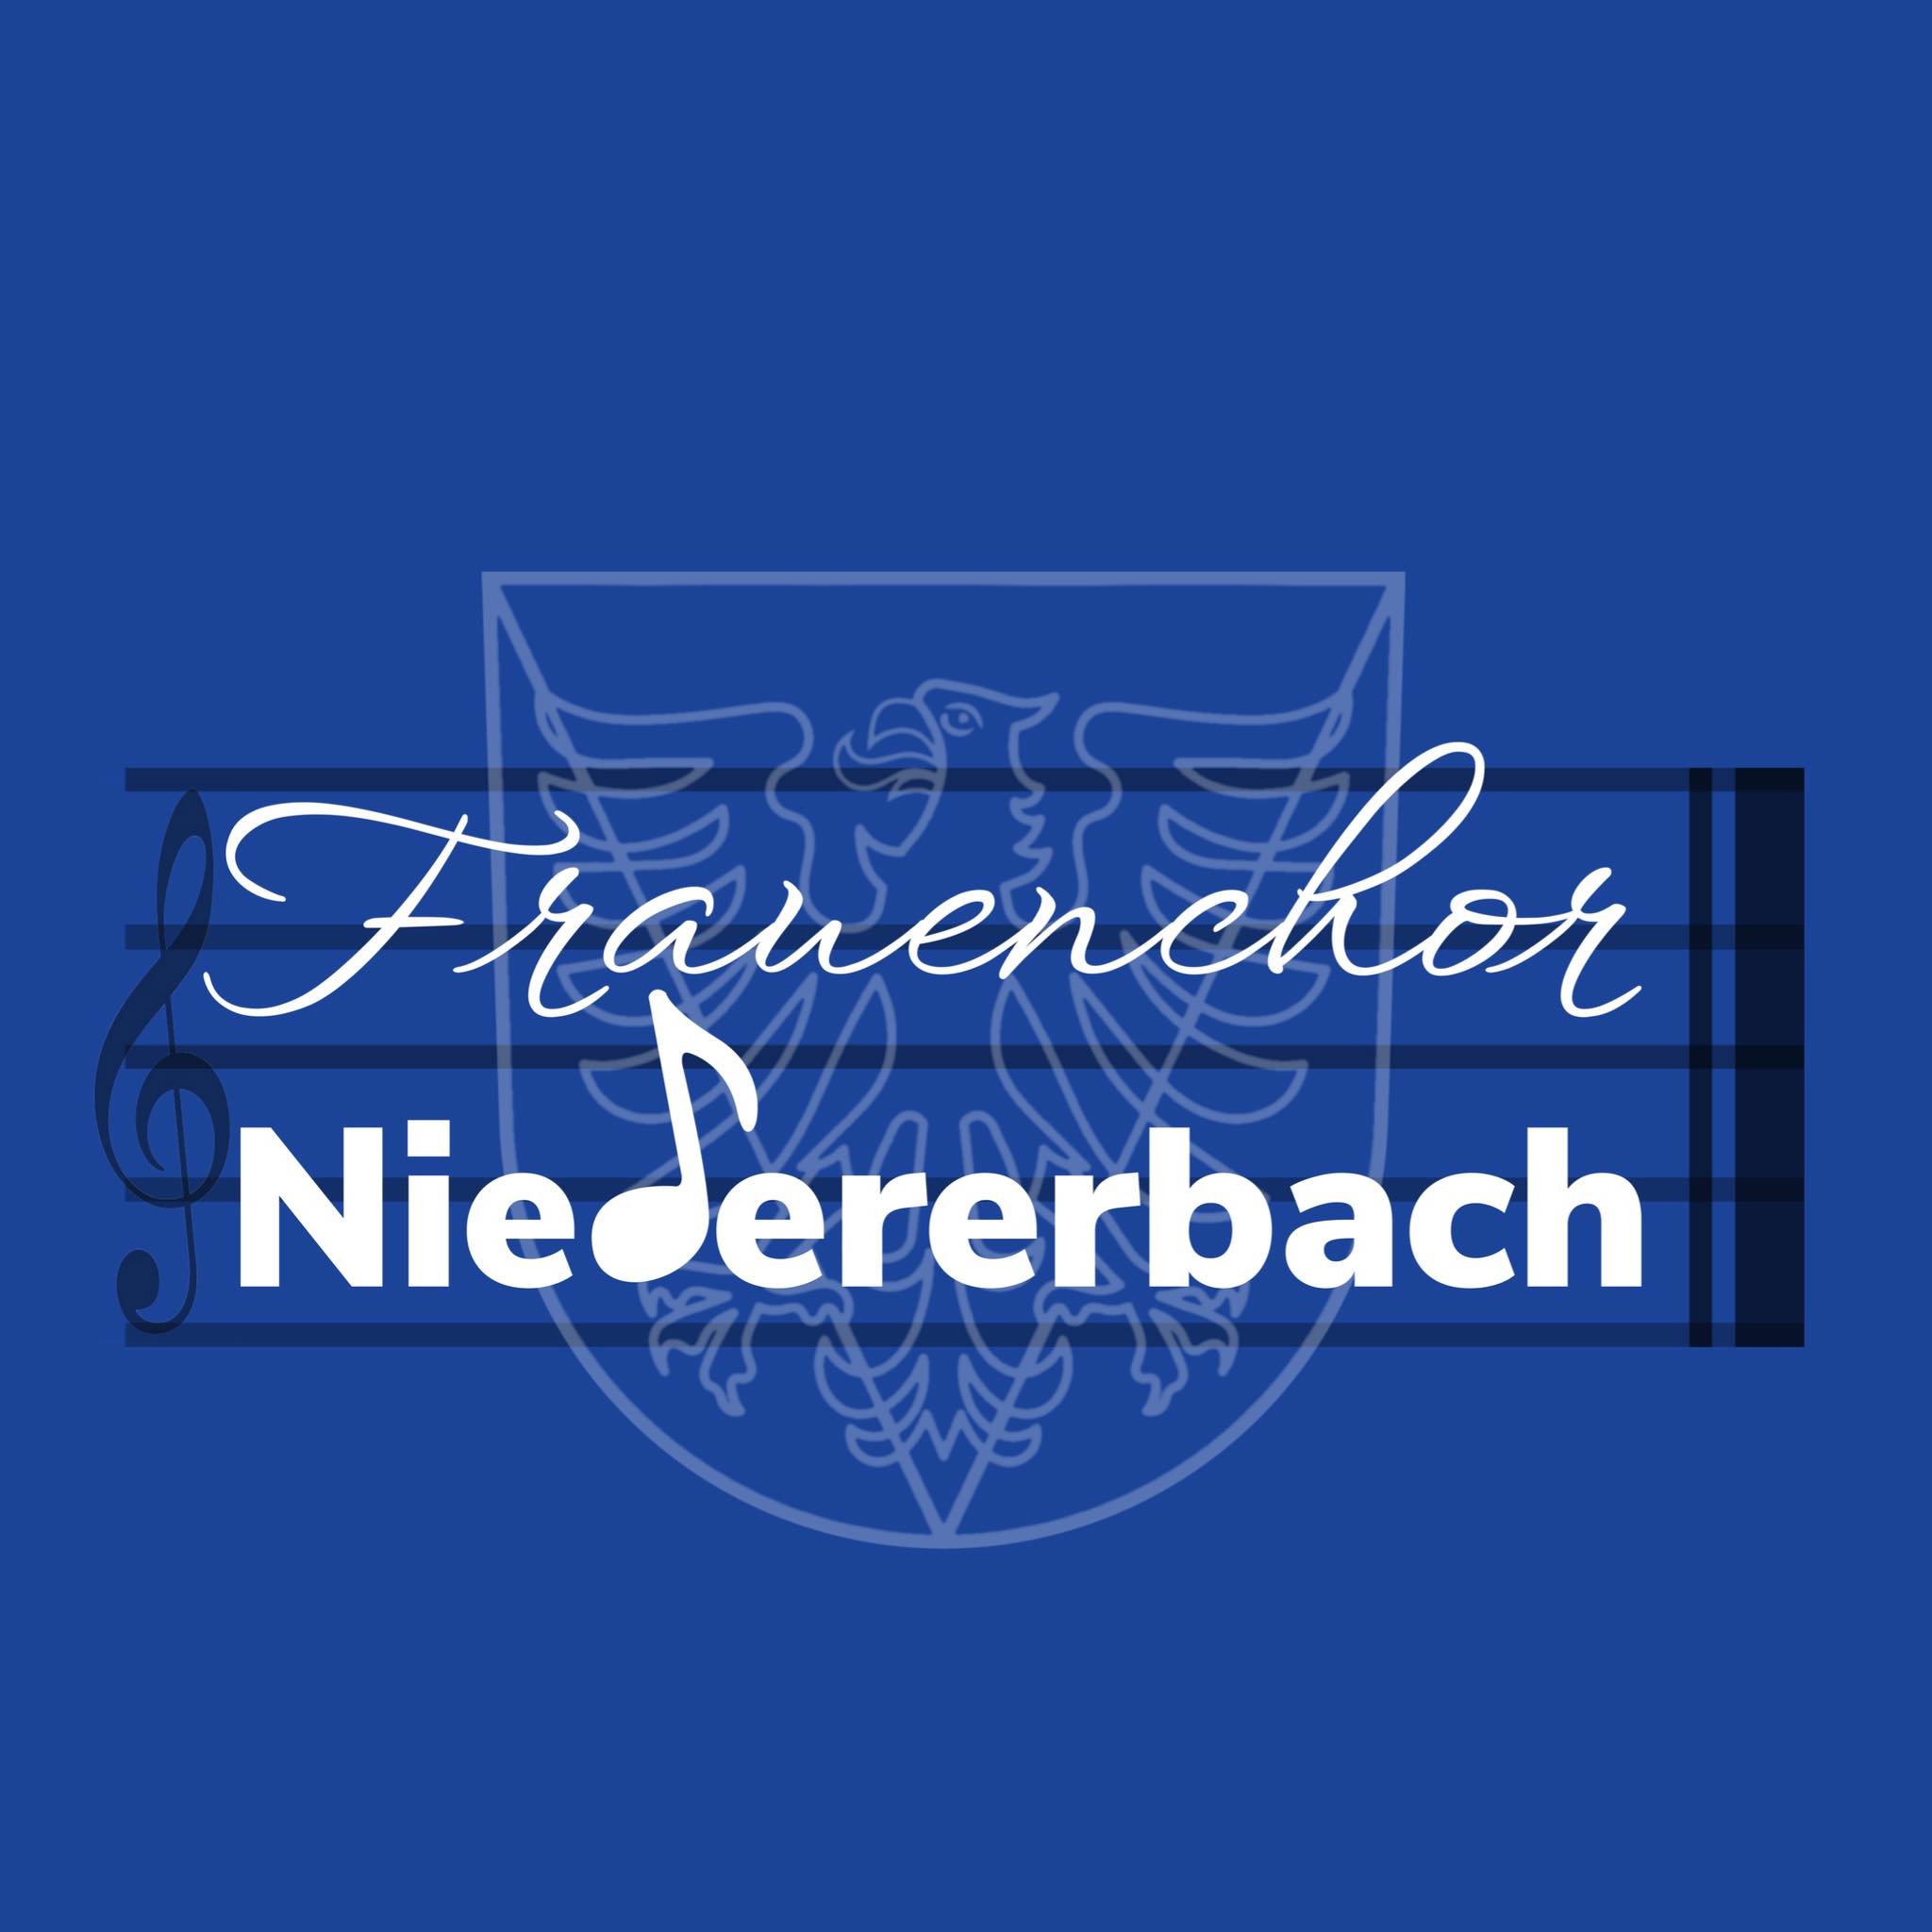 Frauenchor Niedererbach e.V.